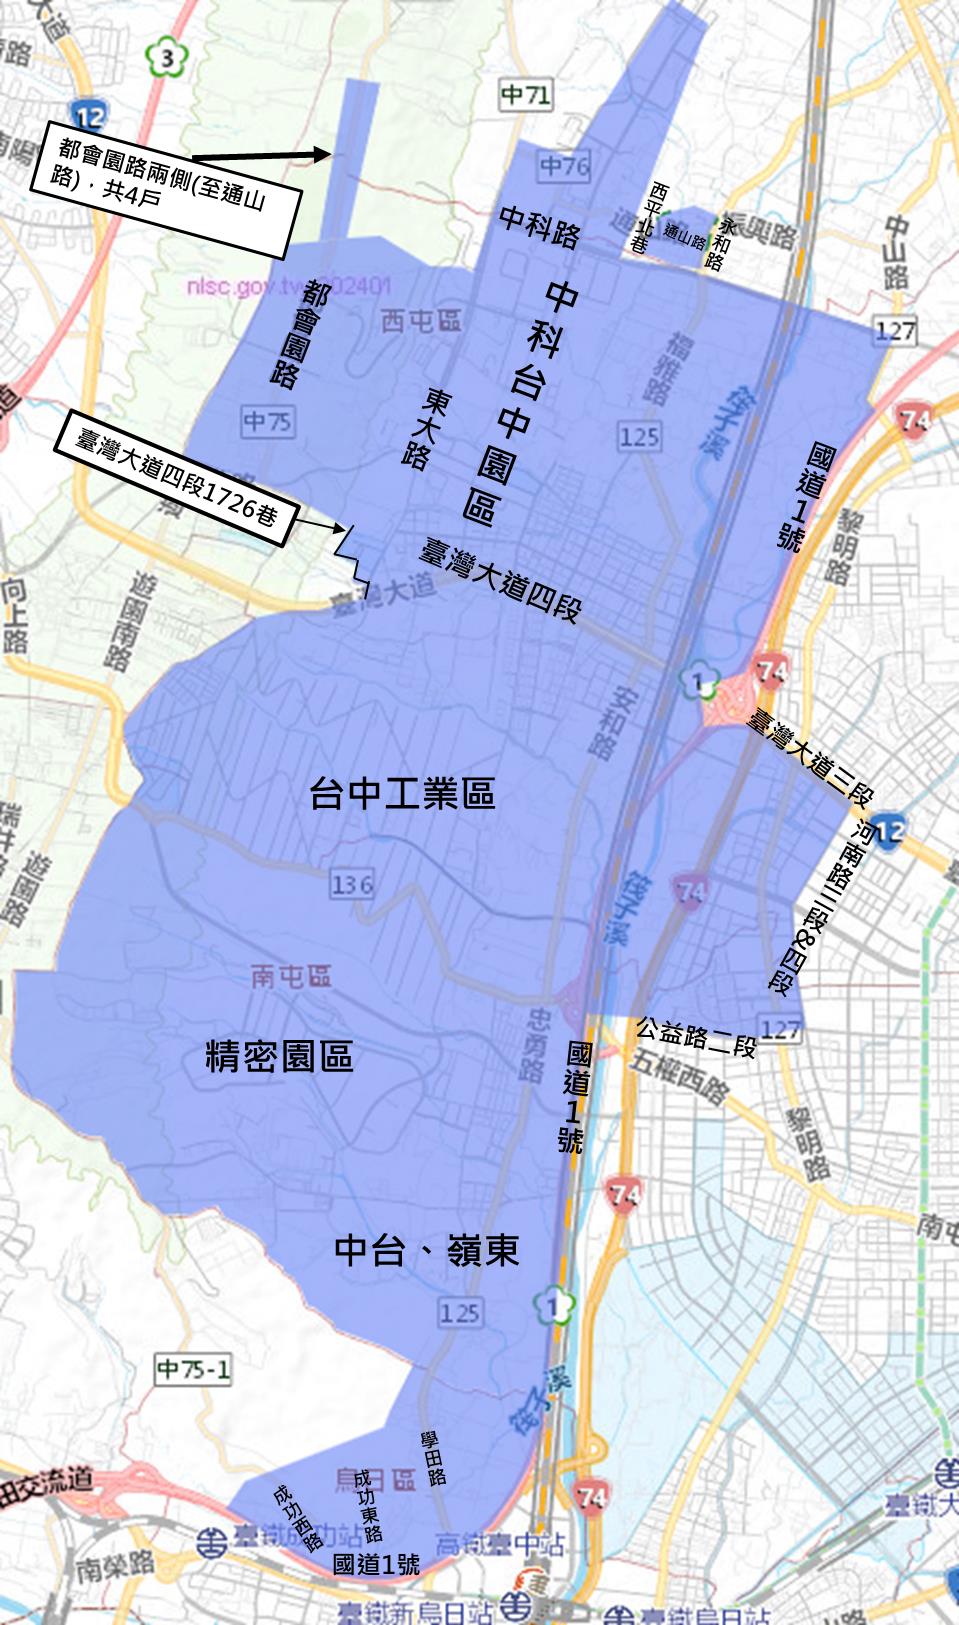 台湾自来水公司今宣布，台中市包括中科台中园区、精密科学园区、台中工业区在内的西屯、南屯、大雅及乌日区自本月14日上午10时起停水36时 ，受影响达6万2740用户。图／台湾自来水公司提供